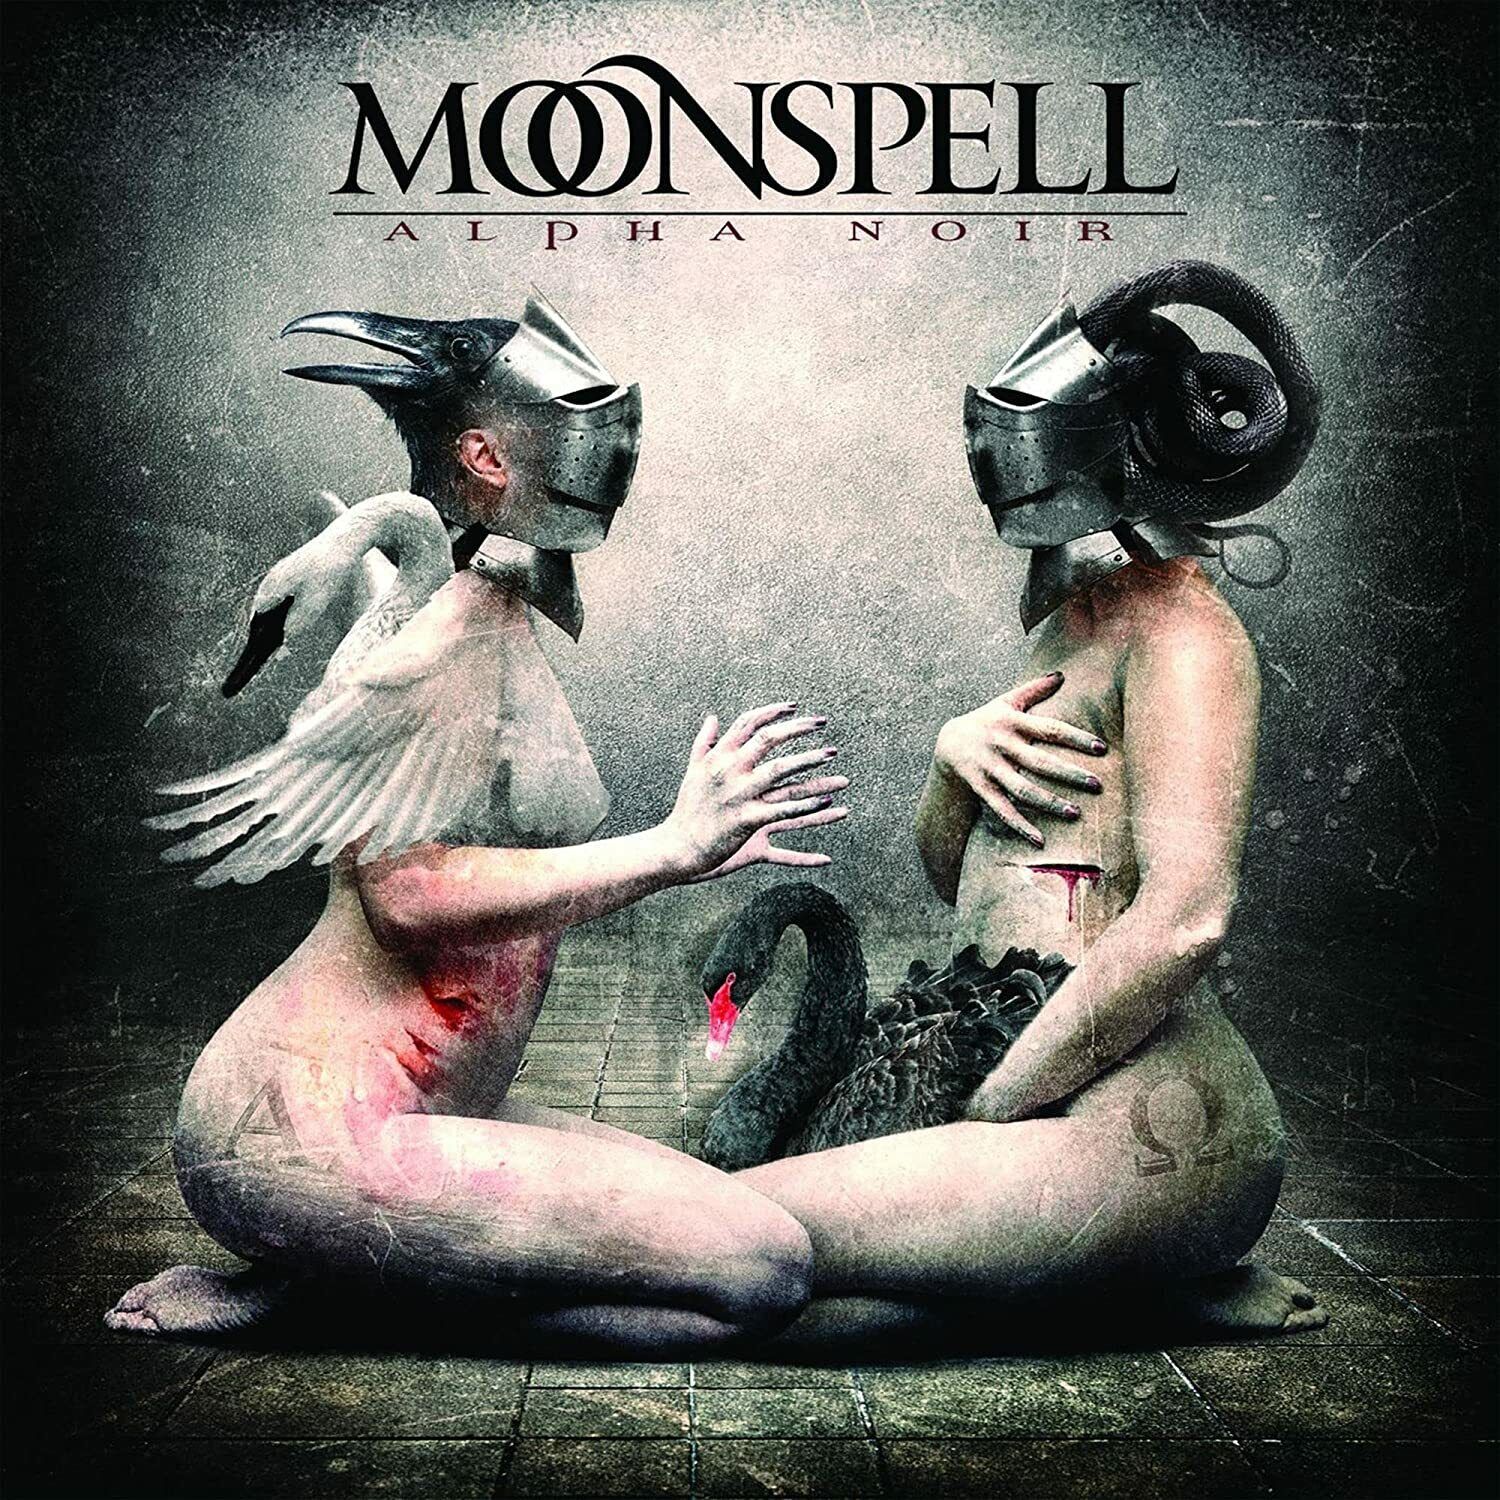 MOONSPELL - Alpha Noir [CD]